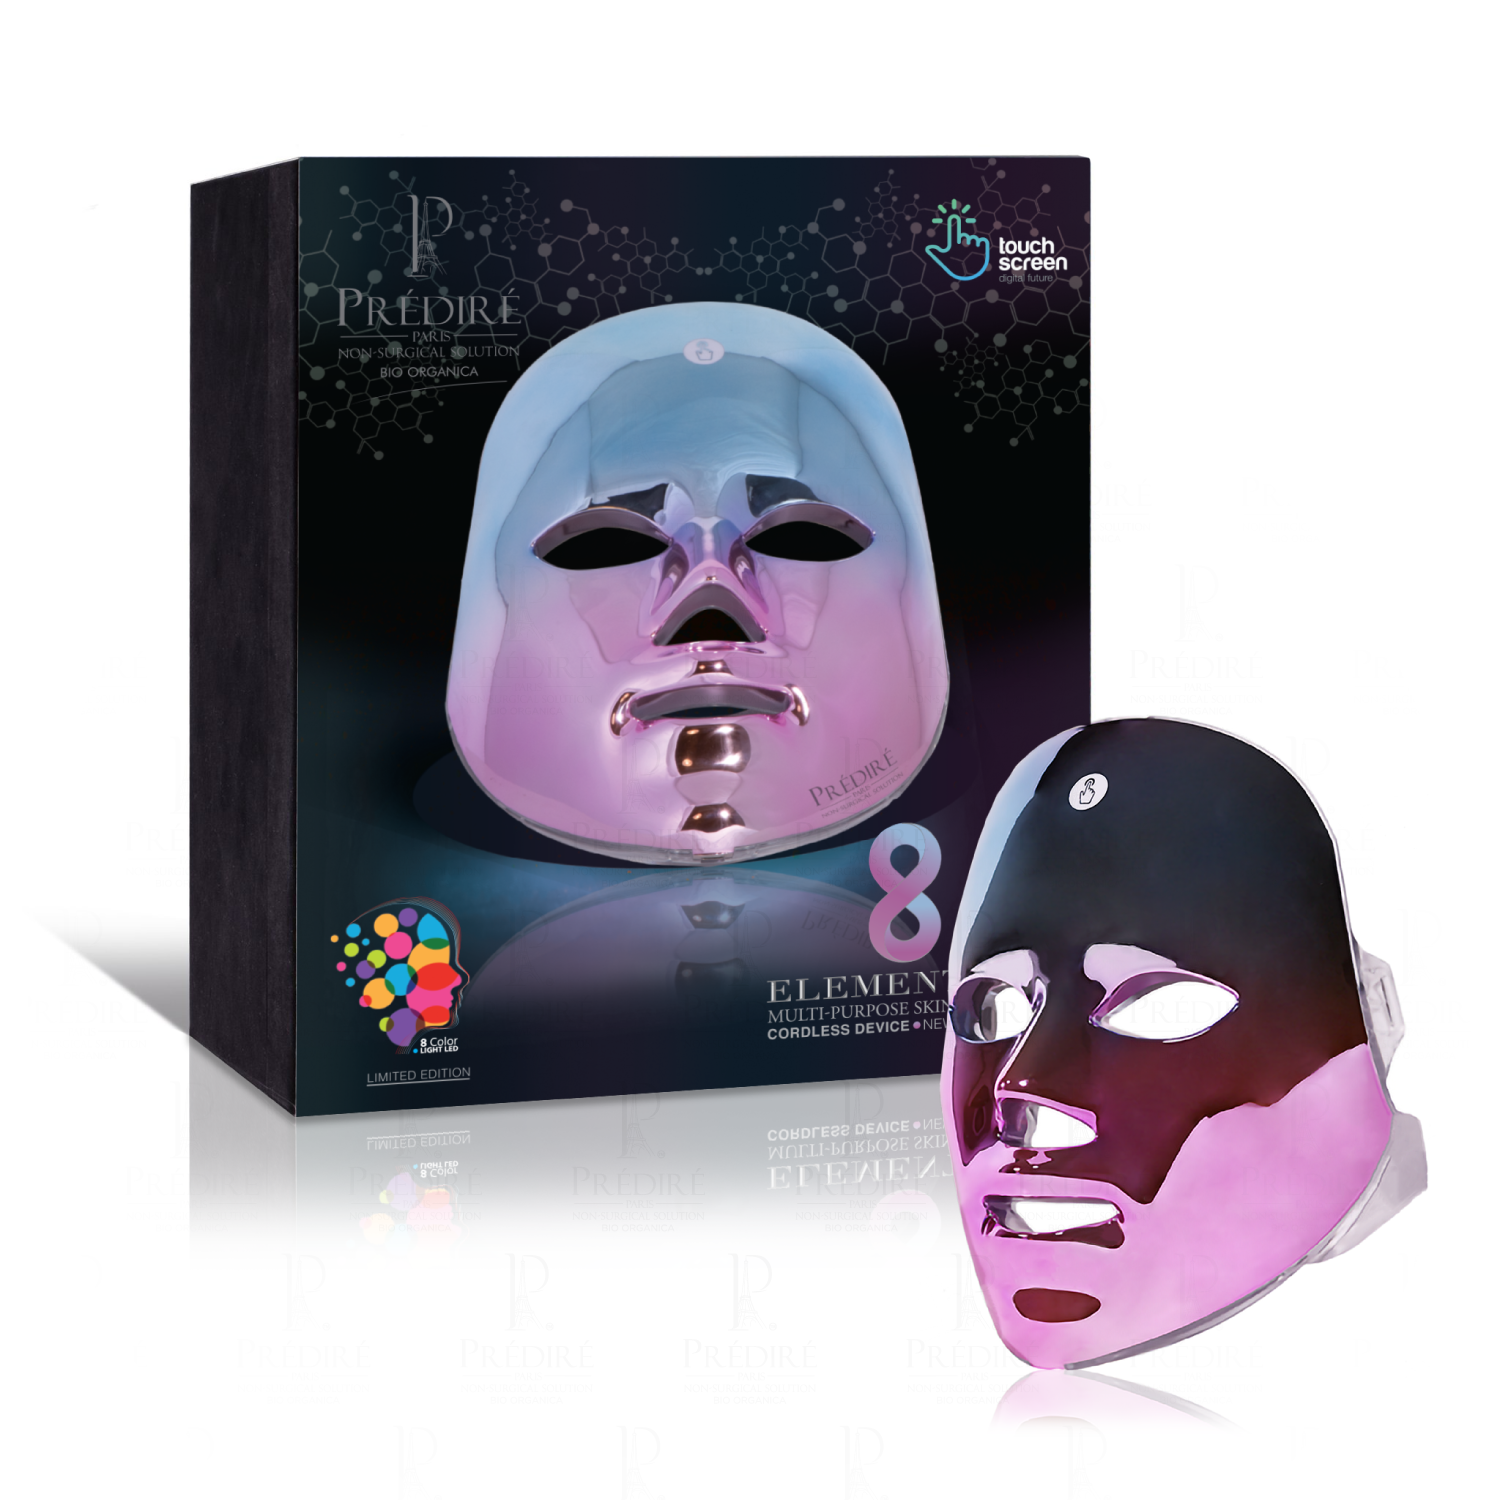 8 ELEMENT PRO, Multi-Purpose Skin Care LED Mask